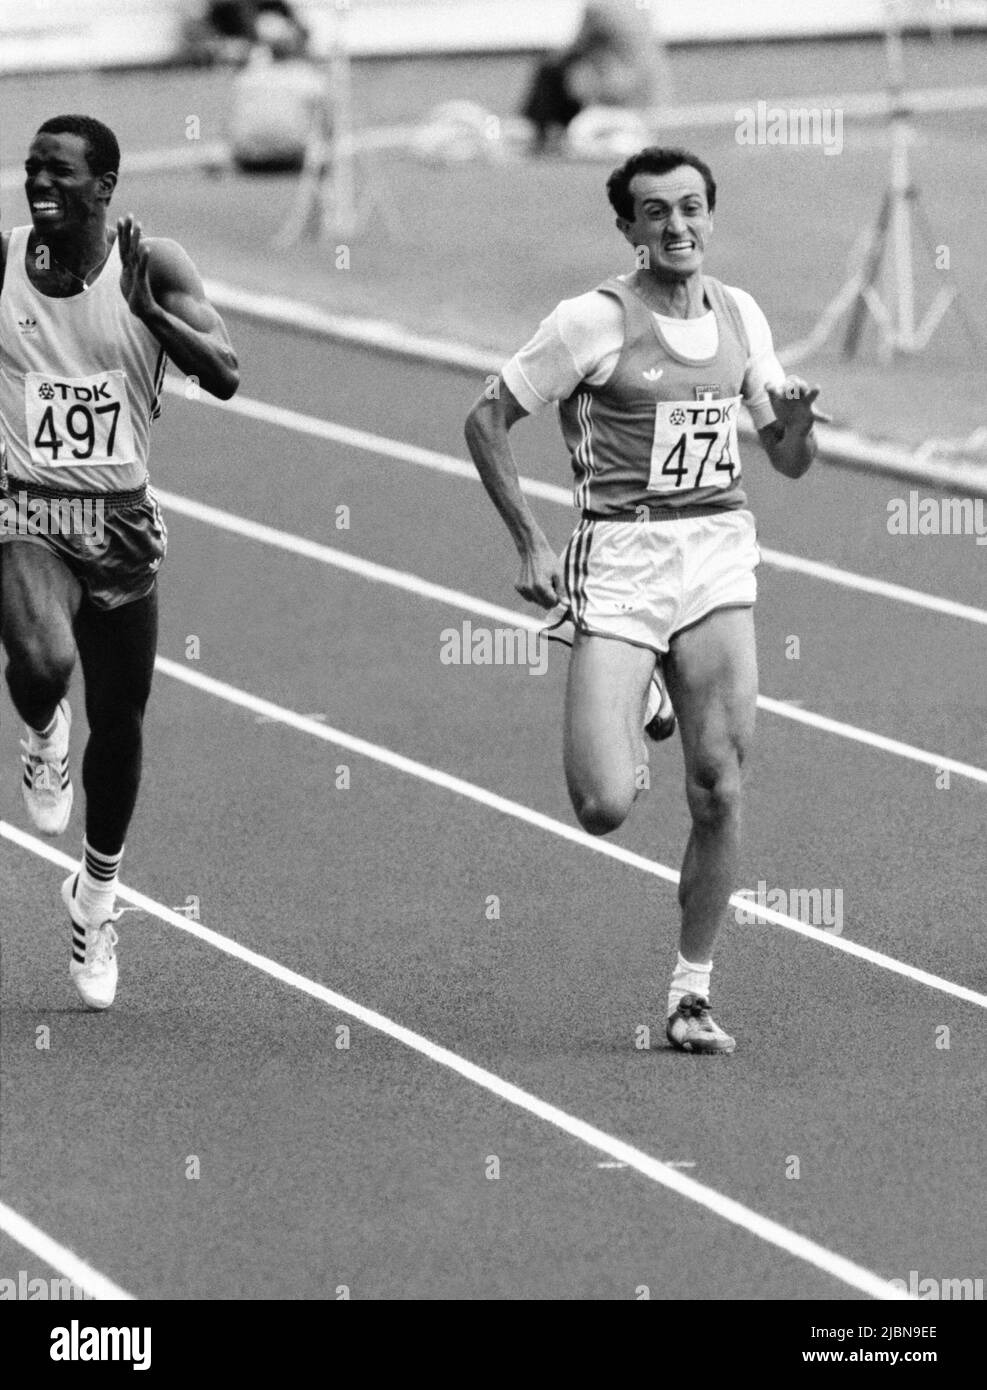 CHAMPIONNAT DU MONDE À HELSINKI 1983 Pietro Minea Italie 474 et Leroy Reid Jamaïque à 200 m au championnat du monde à Helsingki 1983 Banque D'Images